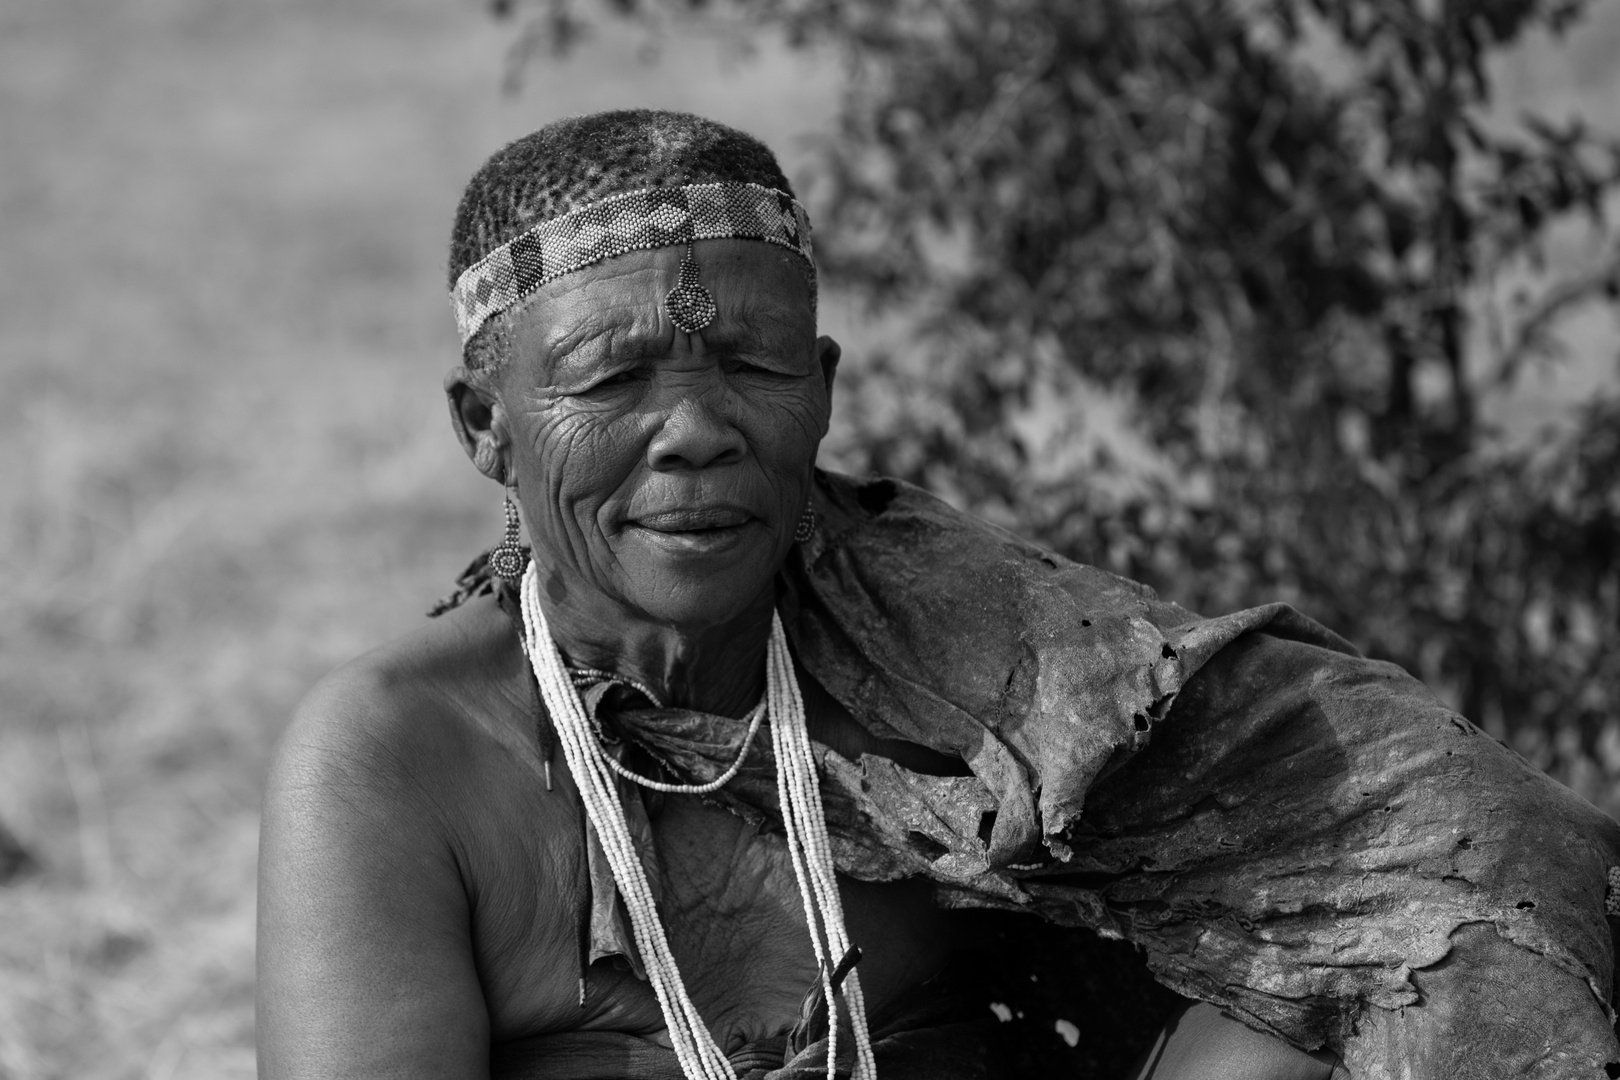 San Bushwoman, Botswana